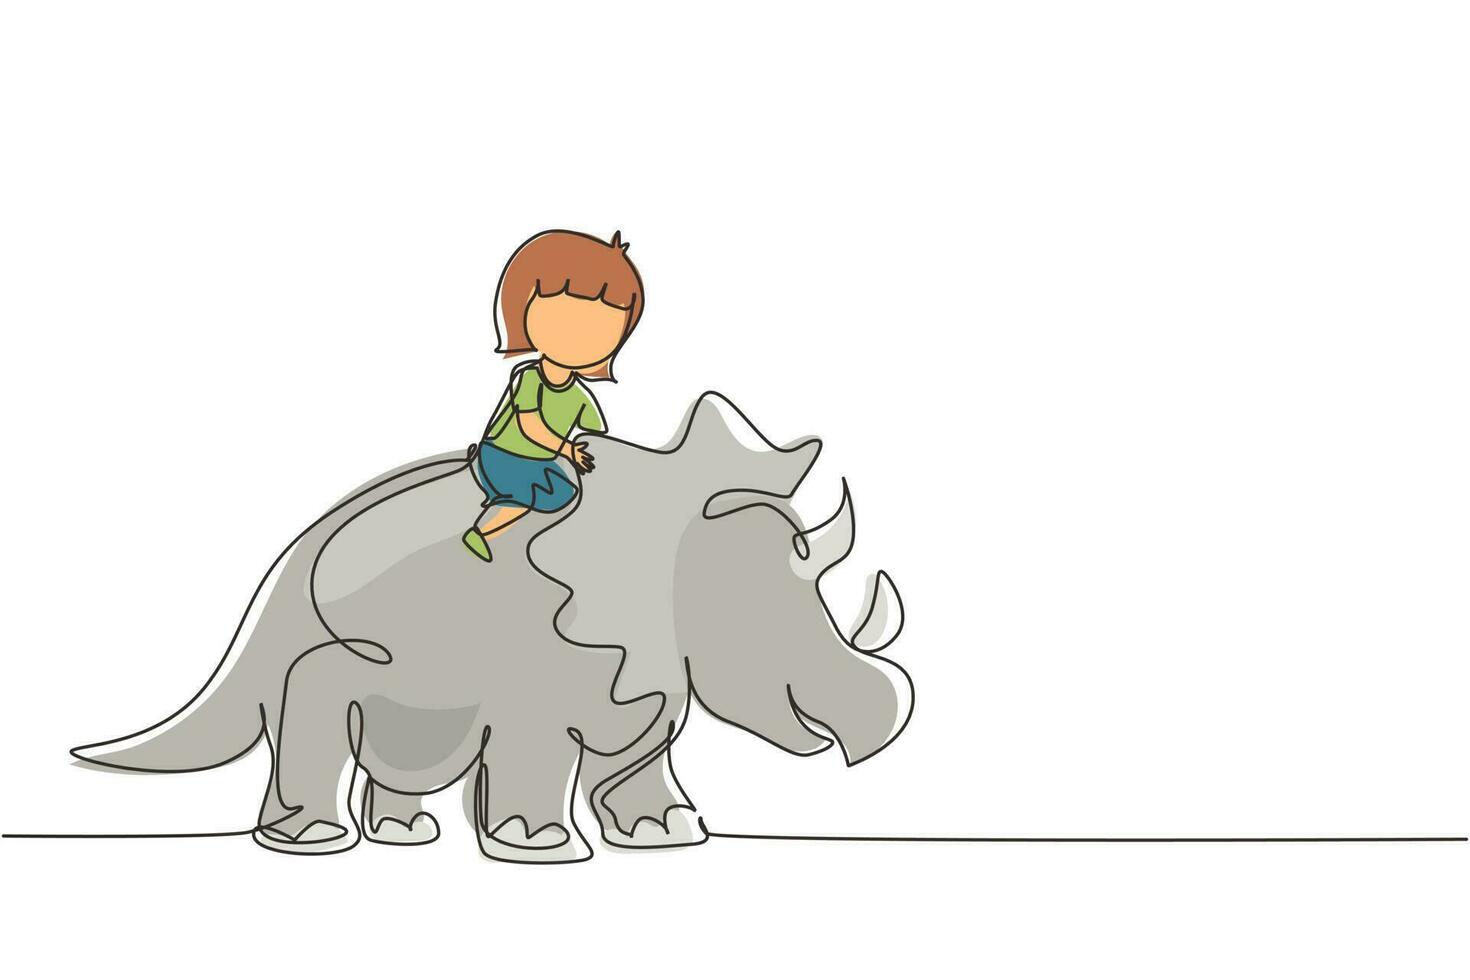 dibujo continuo de una línea niña cavernícola montando triceratops. niño sentado en la parte posterior del dinosaurio. niños de la edad de piedra. vida humana antigua. ilustración gráfica de vector de diseño de dibujo de una sola línea